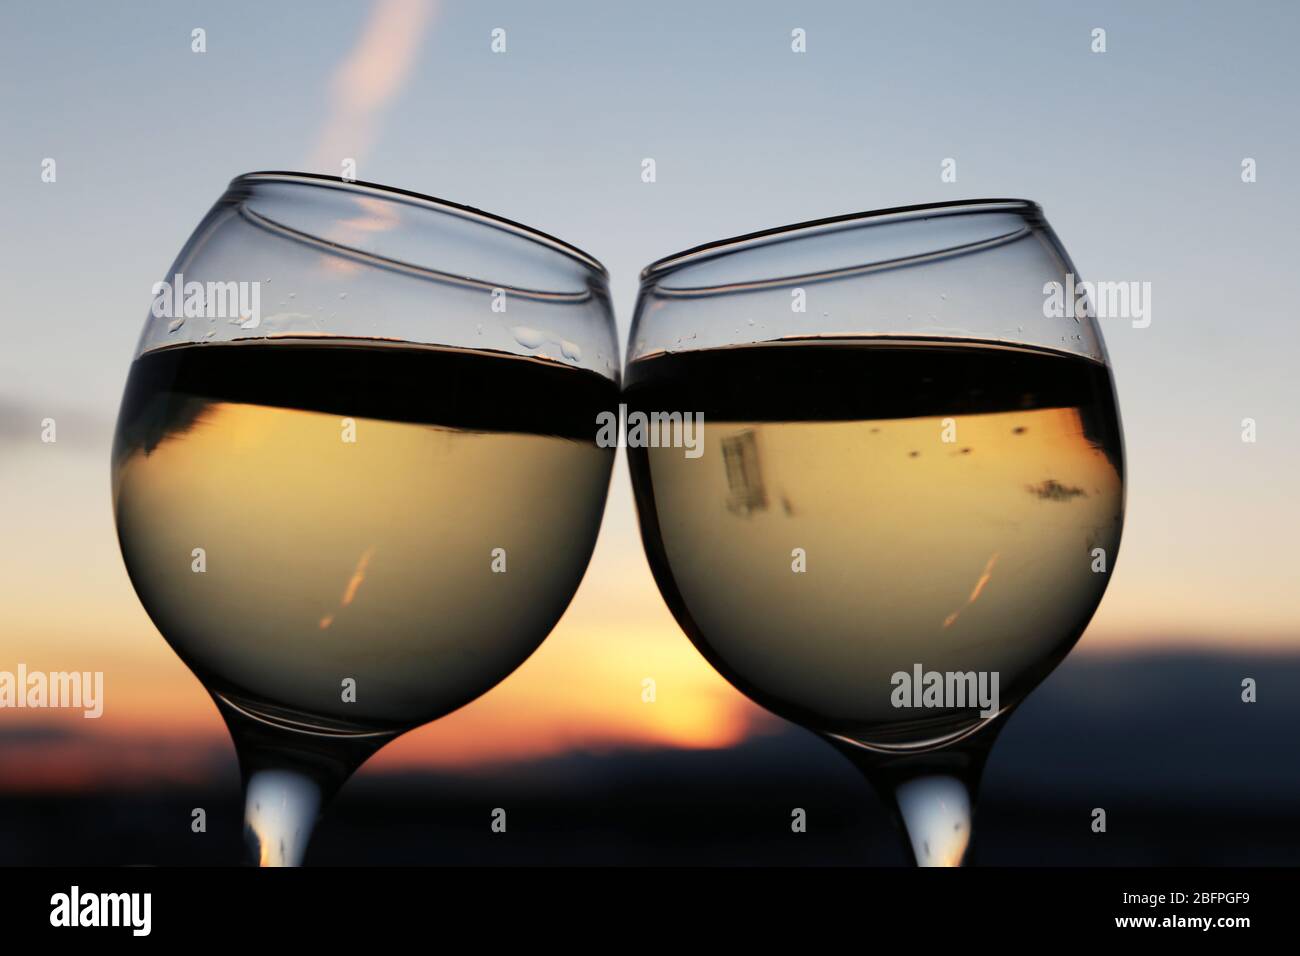 Zwei Gläser mit Weißwein auf buntem Sonnenuntergang Hintergrund. Paar klirren Gläser, Konzept der Feier, romantischen Abend zu Hause Quarantäne Stockfoto